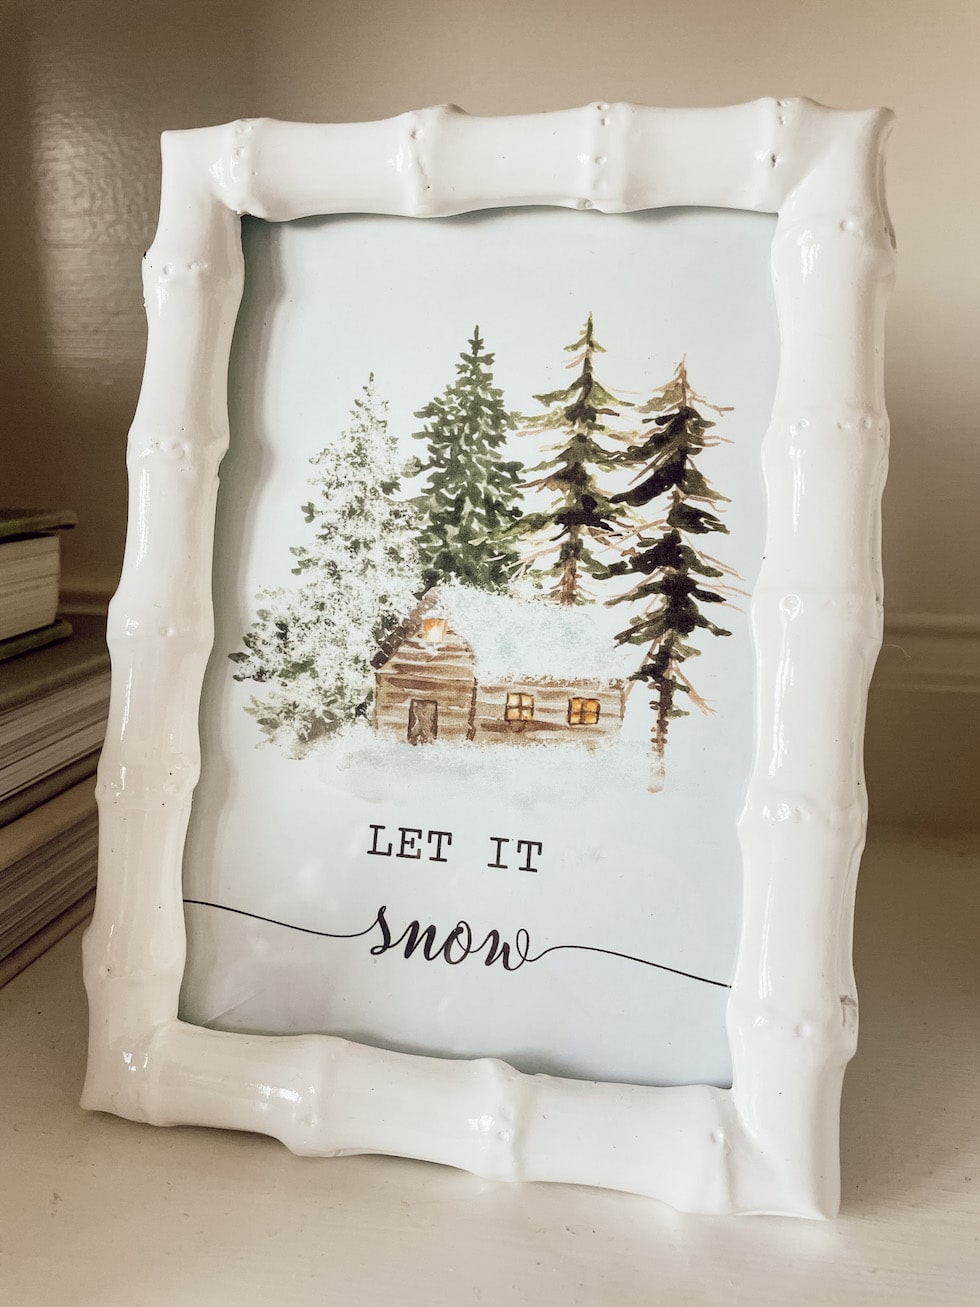 My Early Winter Cottage Bedroom (+ Printable Seasonal Artwork)